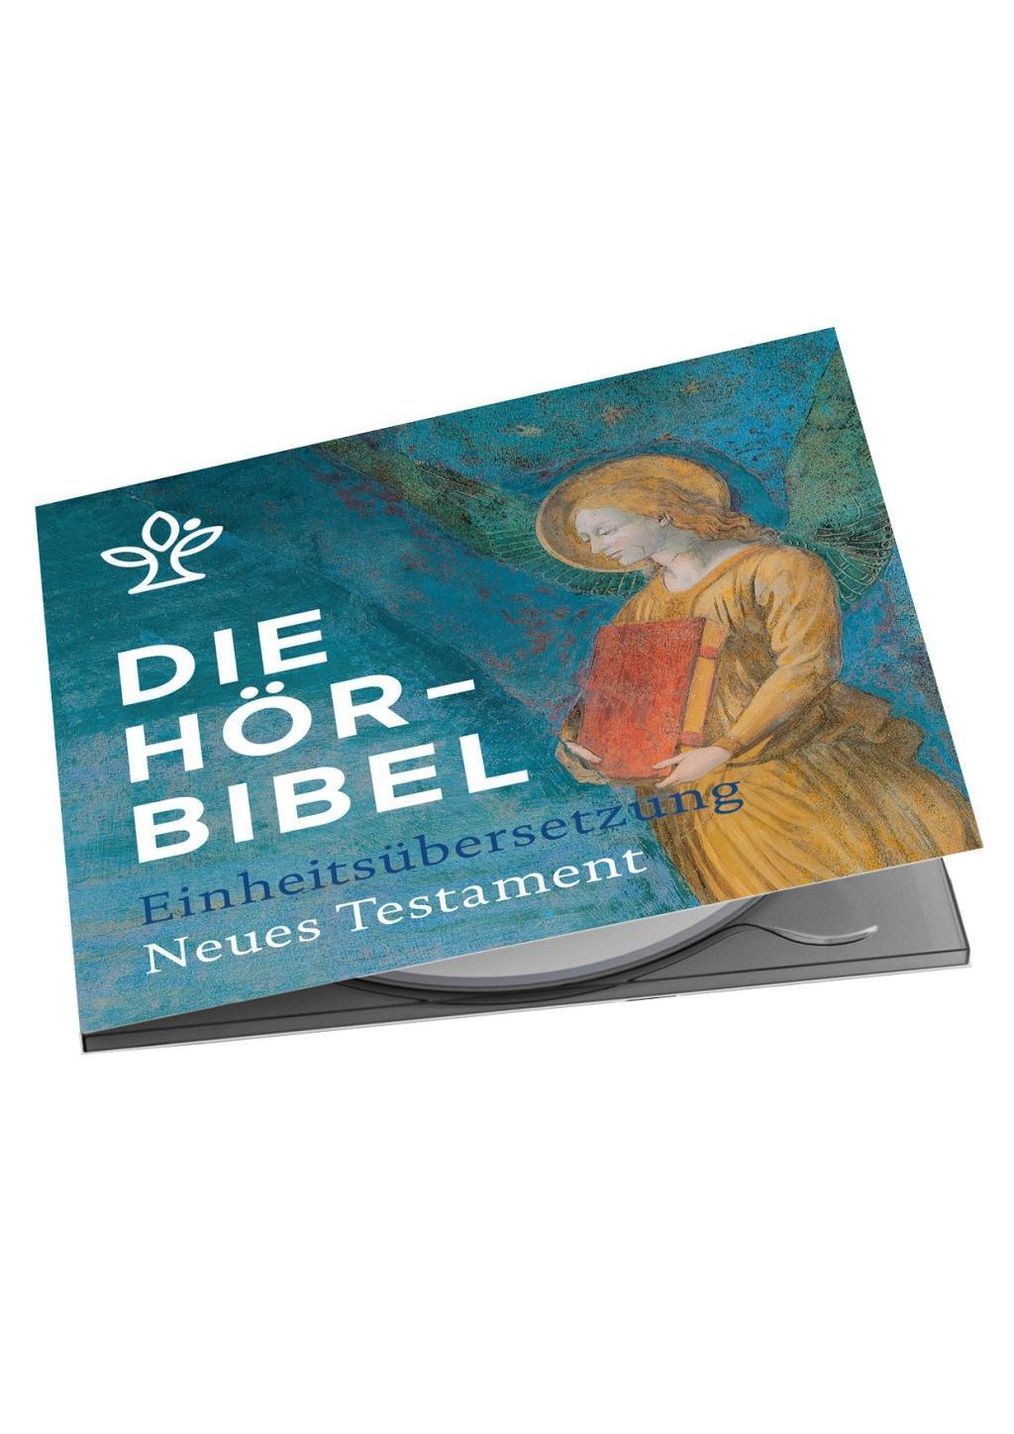 Die Hörbibel - Einheitsübersetzung, Neues Testament, Audio-CD, MP3 Hörbuch  jetzt bei Weltbild.de bestellen